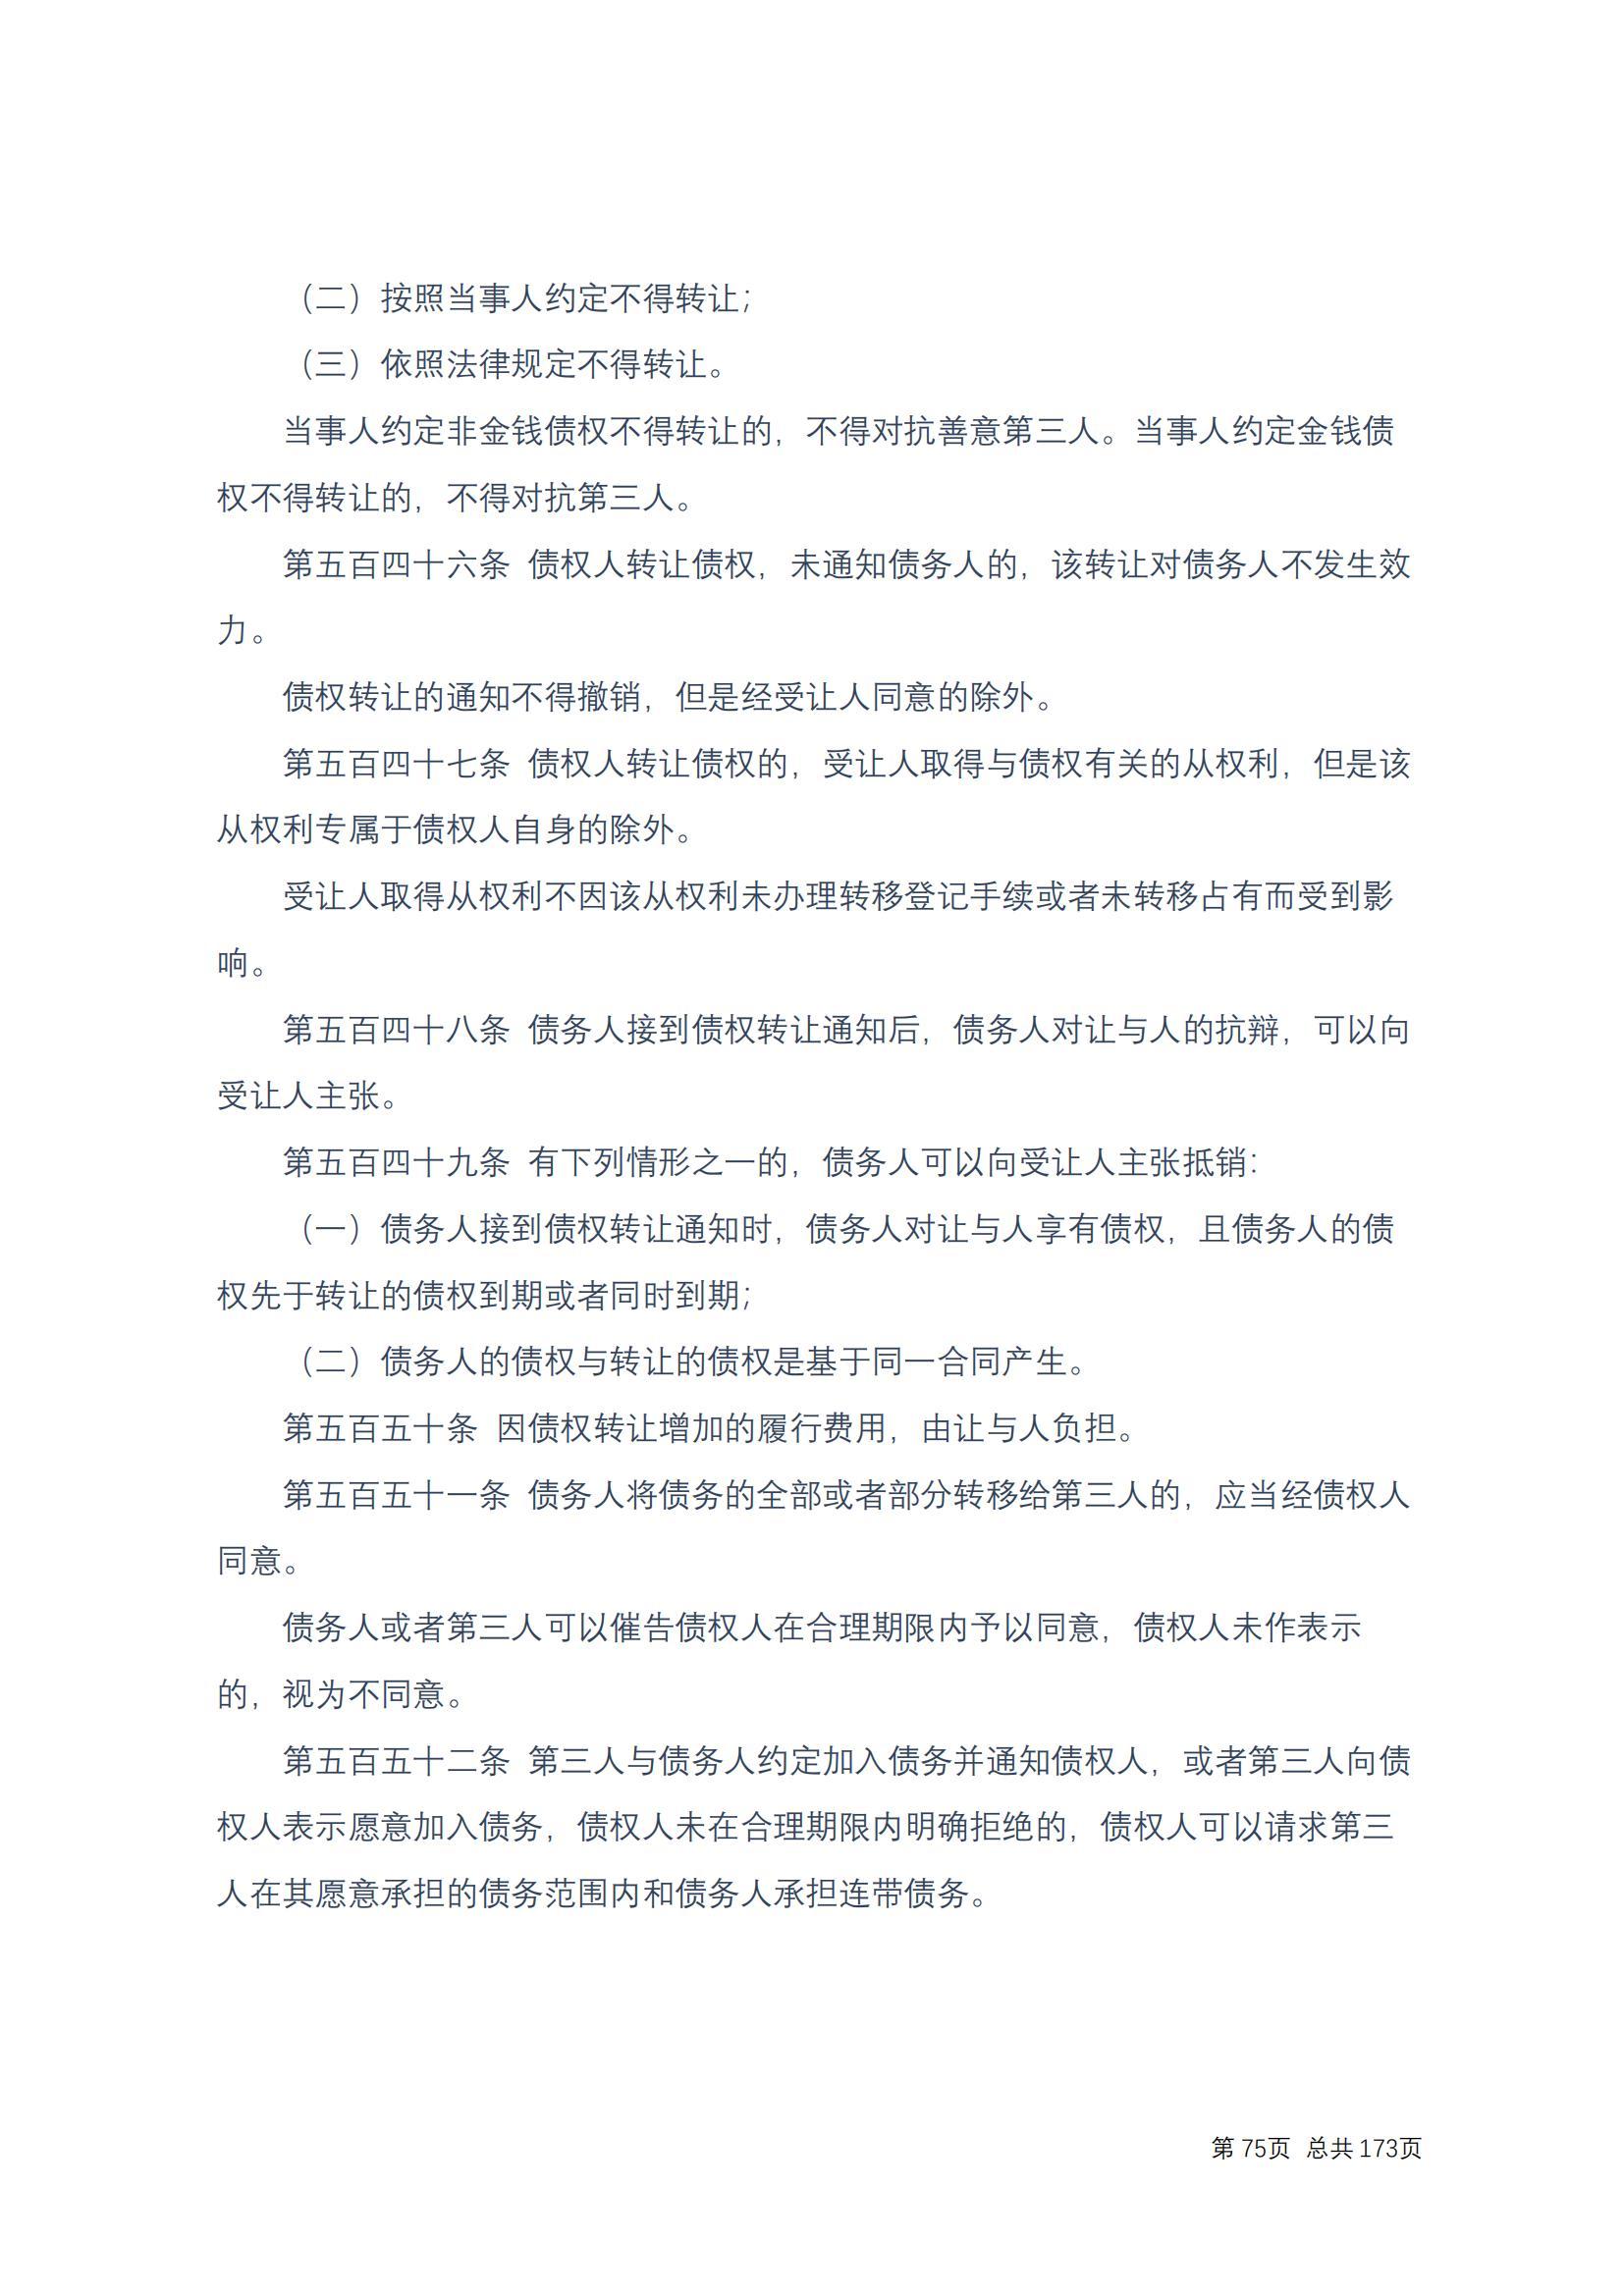 中华人民共和国民法典 修改过_74